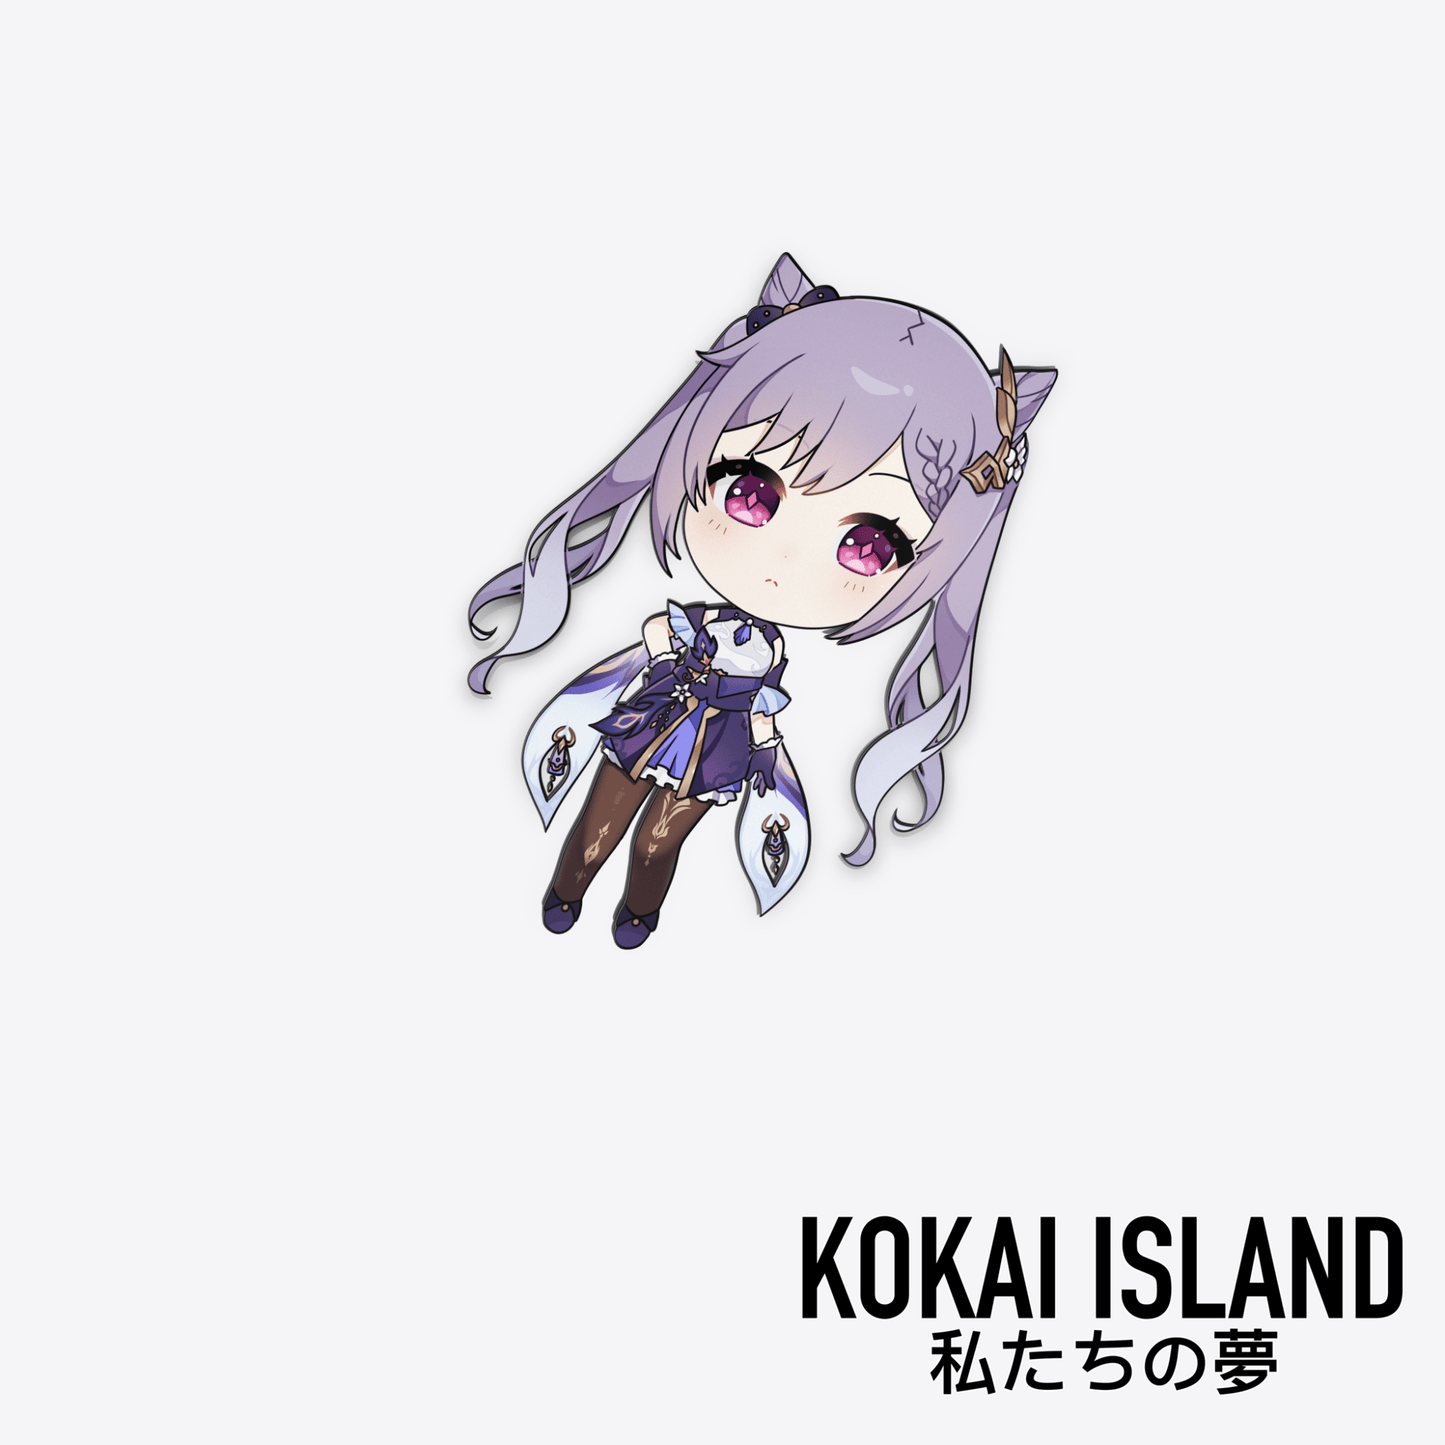 Keqing- Chibi DecalDecalKokai Island